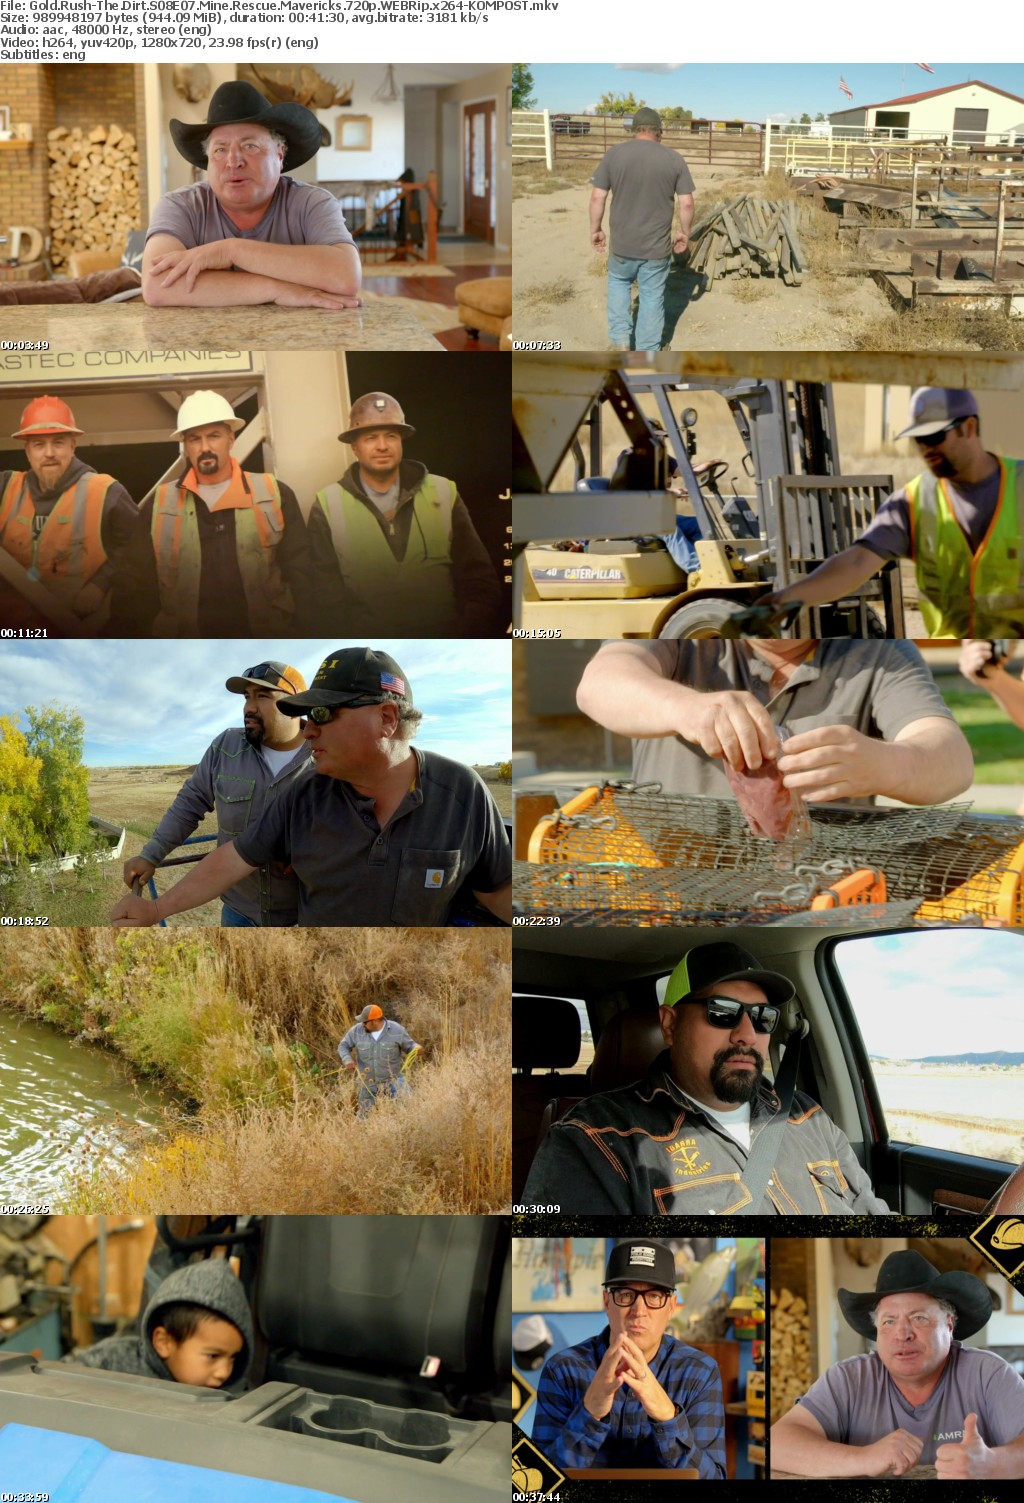 Gold Rush-The Dirt S08E07 Mine Rescue Mavericks 720p WEBRip x264-KOMPOST